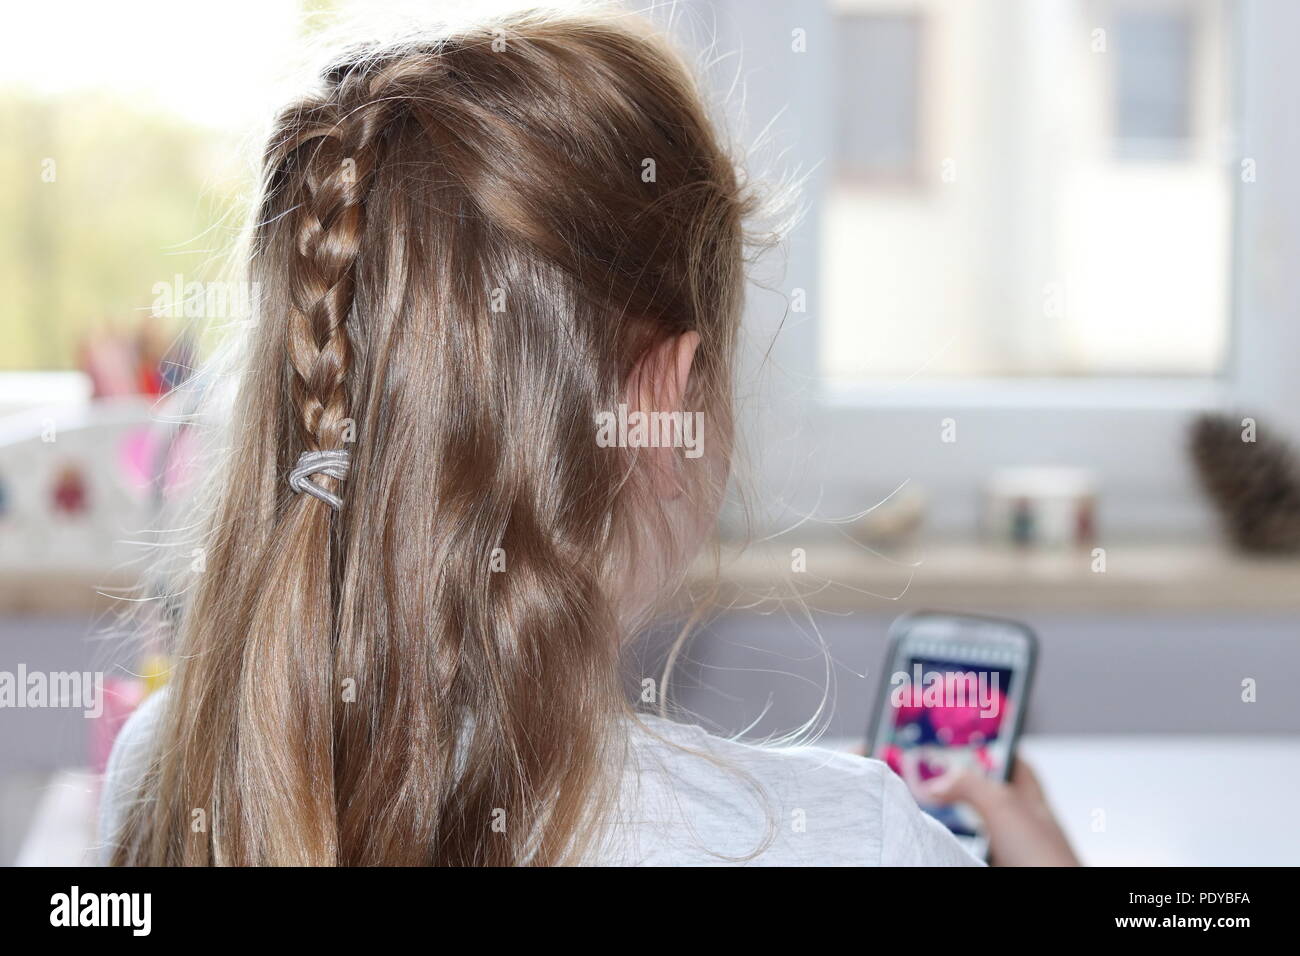 Adolescent Blond girl (la partie supérieure du corps) sist sur son dos, est titulaire d'smartfon dans la main et regarder l'écran du téléphone, de l'intérieur chambre Banque D'Images